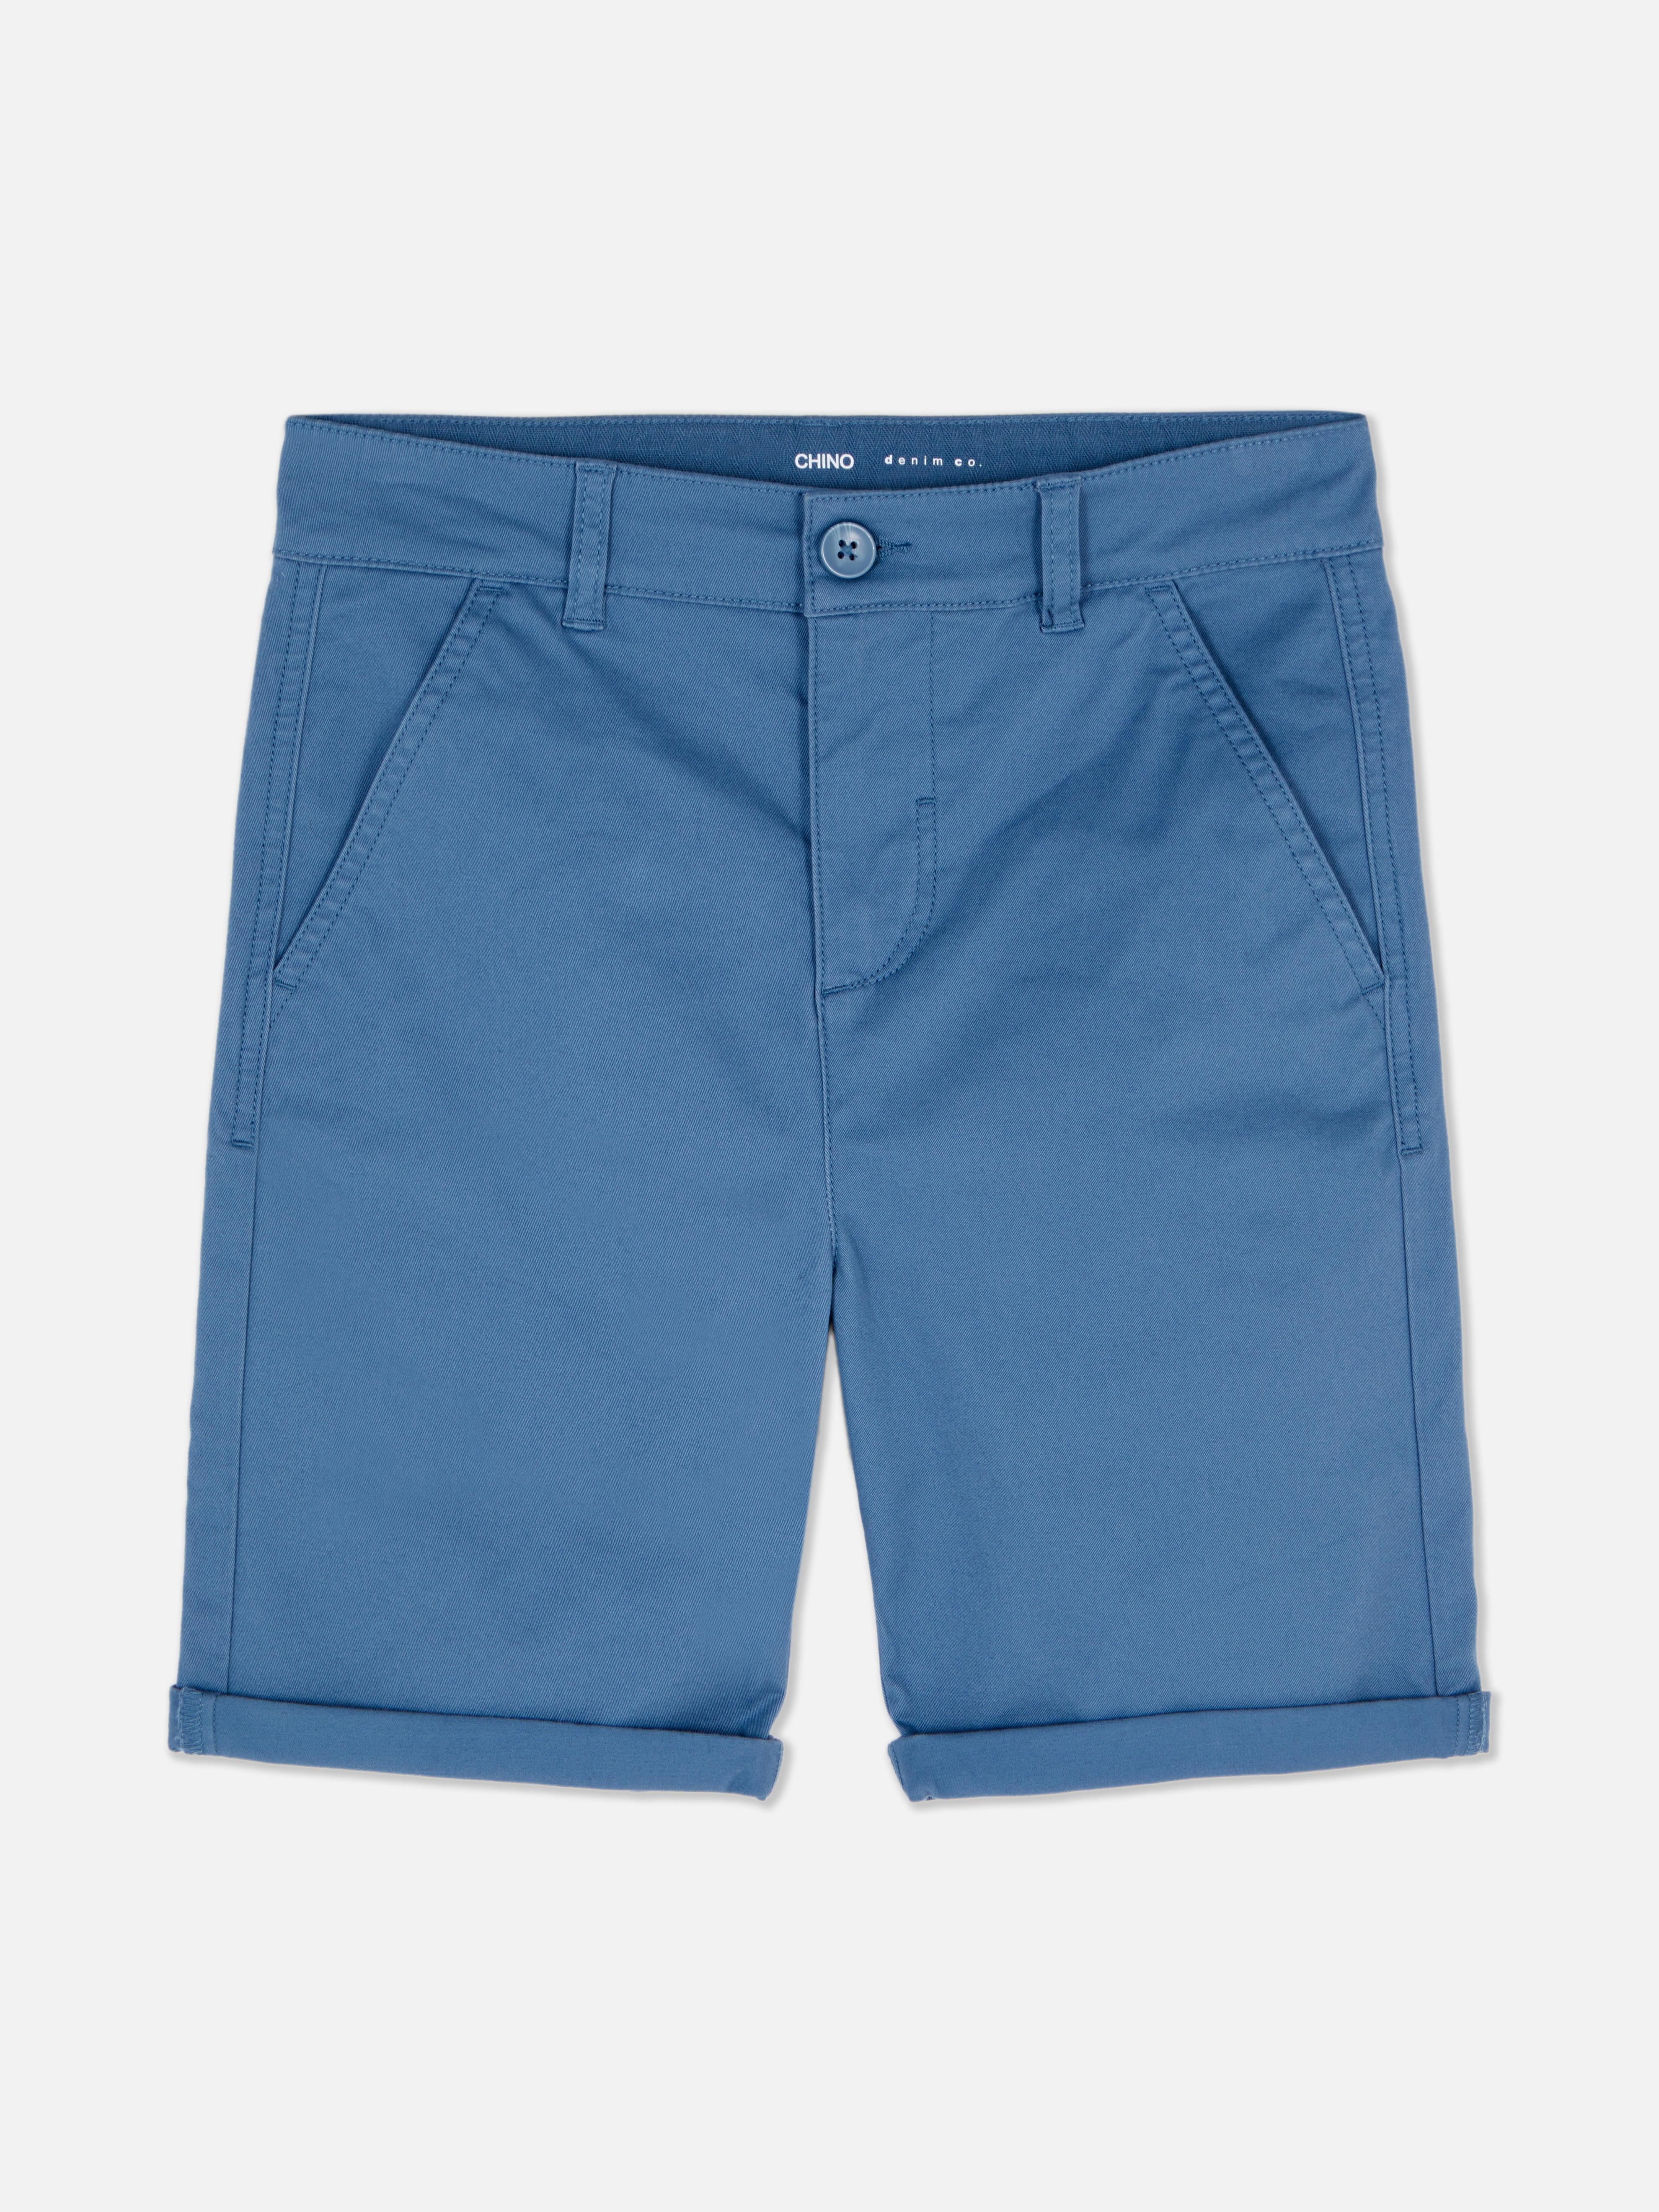 Oferta de Pantalones cortos chinos por 8€ en Primark